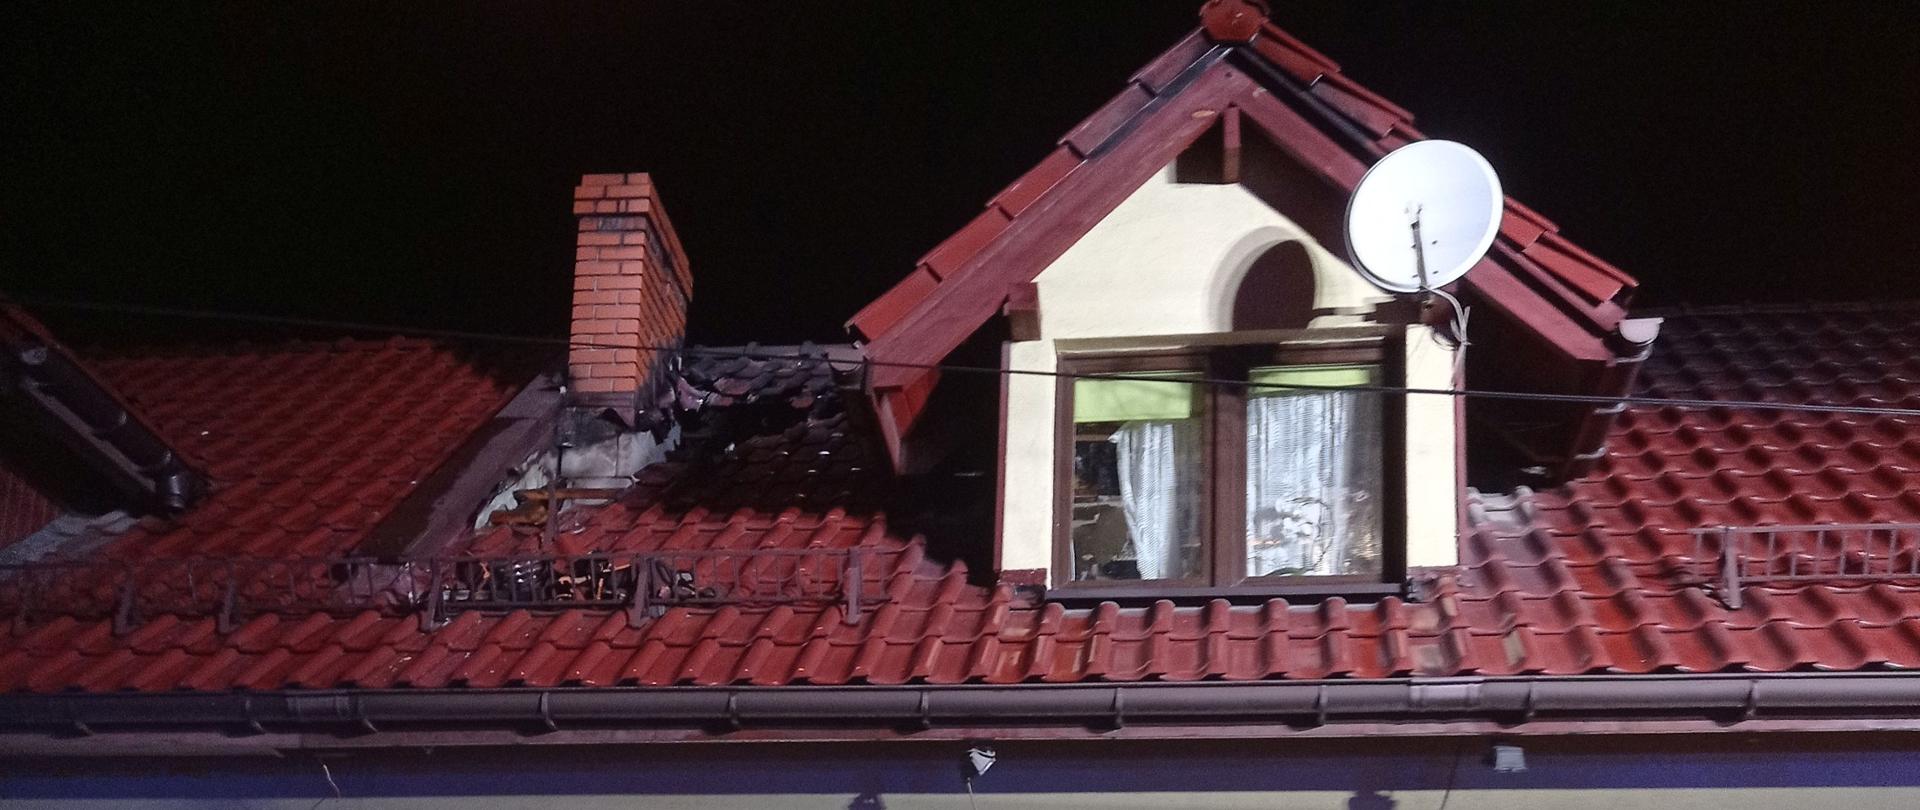 Dom mieszkalny jednorodzinny z częściowo nadpalonym dachem. Zdjęcie od frontu budynku.